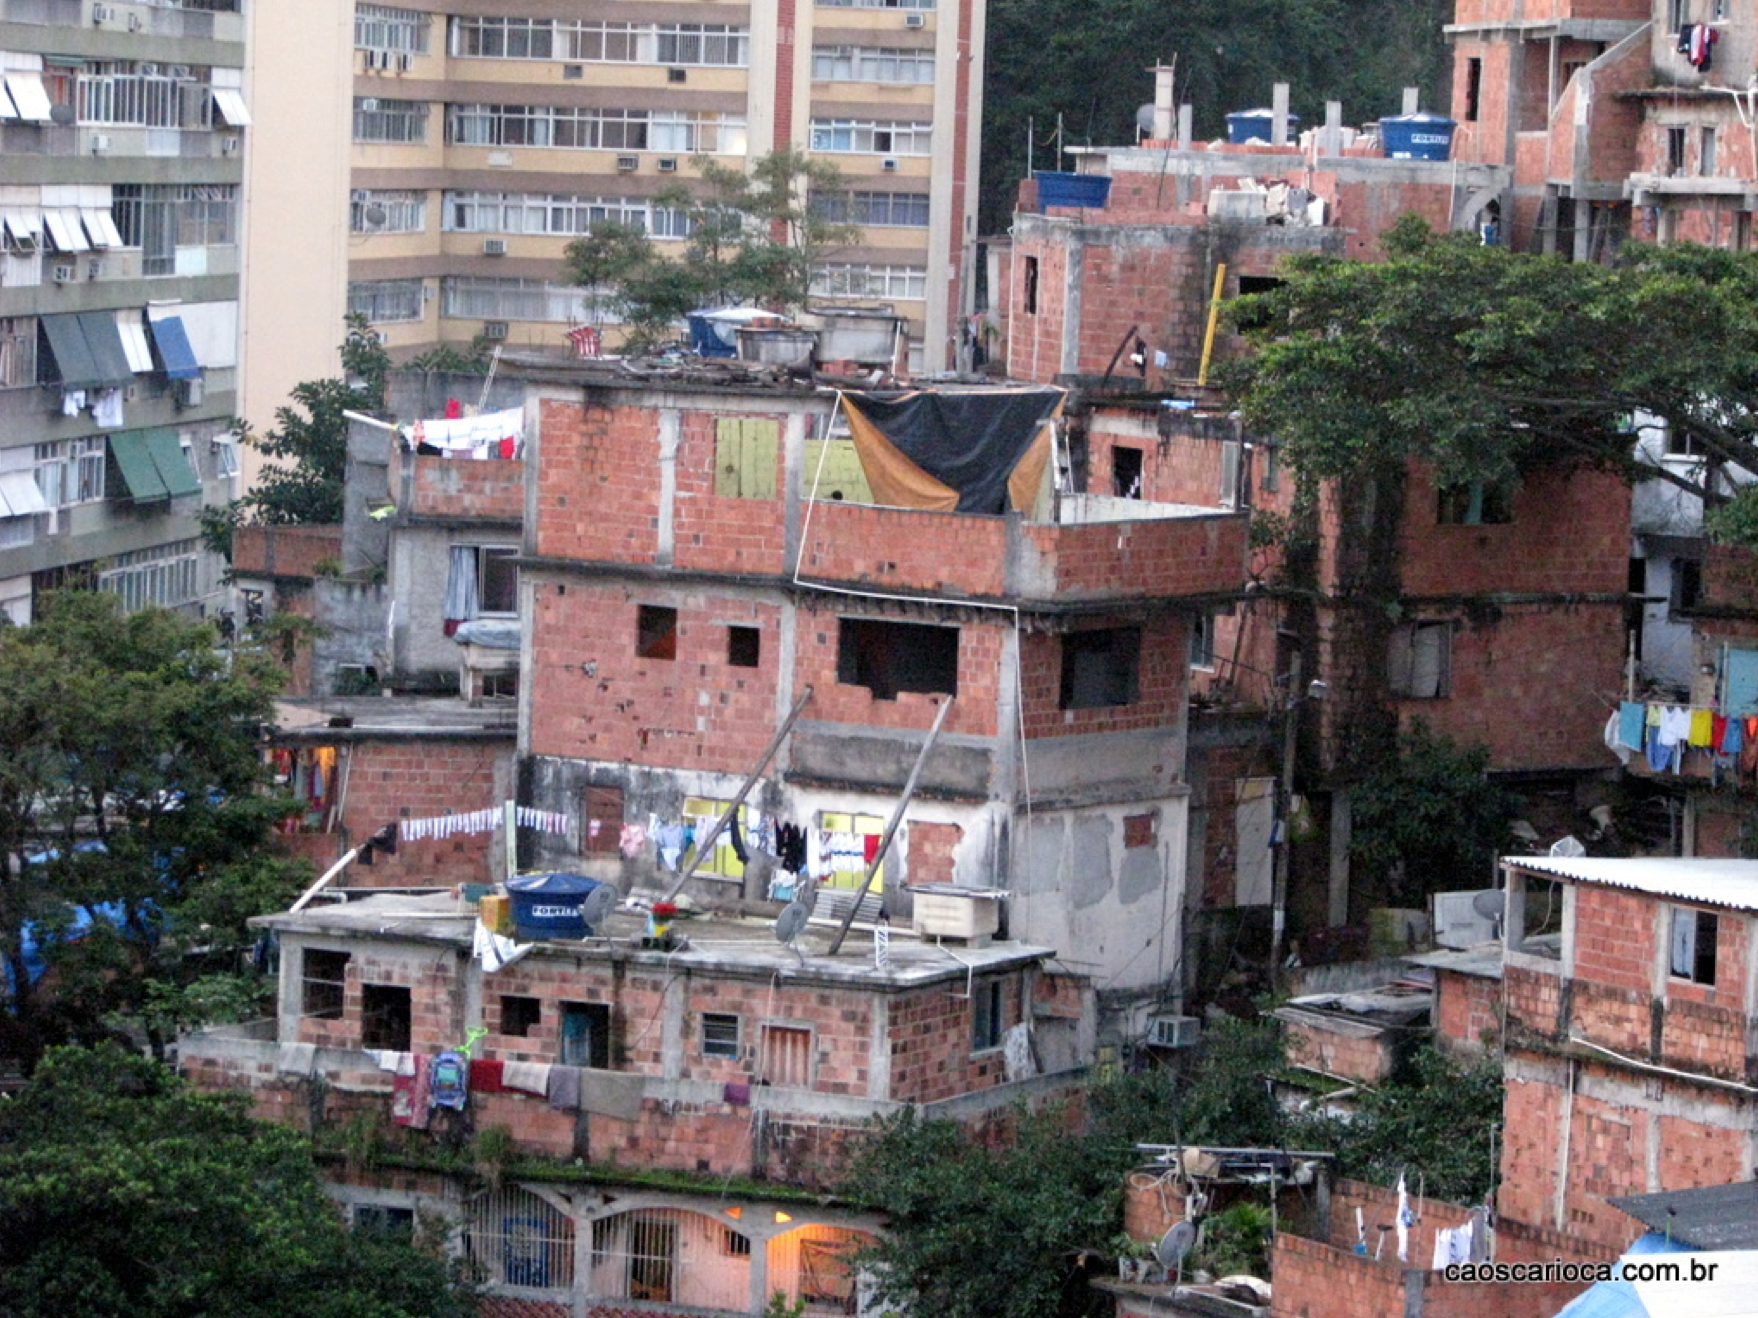 Pavão-Pavãozinho, favela, Rio de Janeiro, Brazil, Brazil News